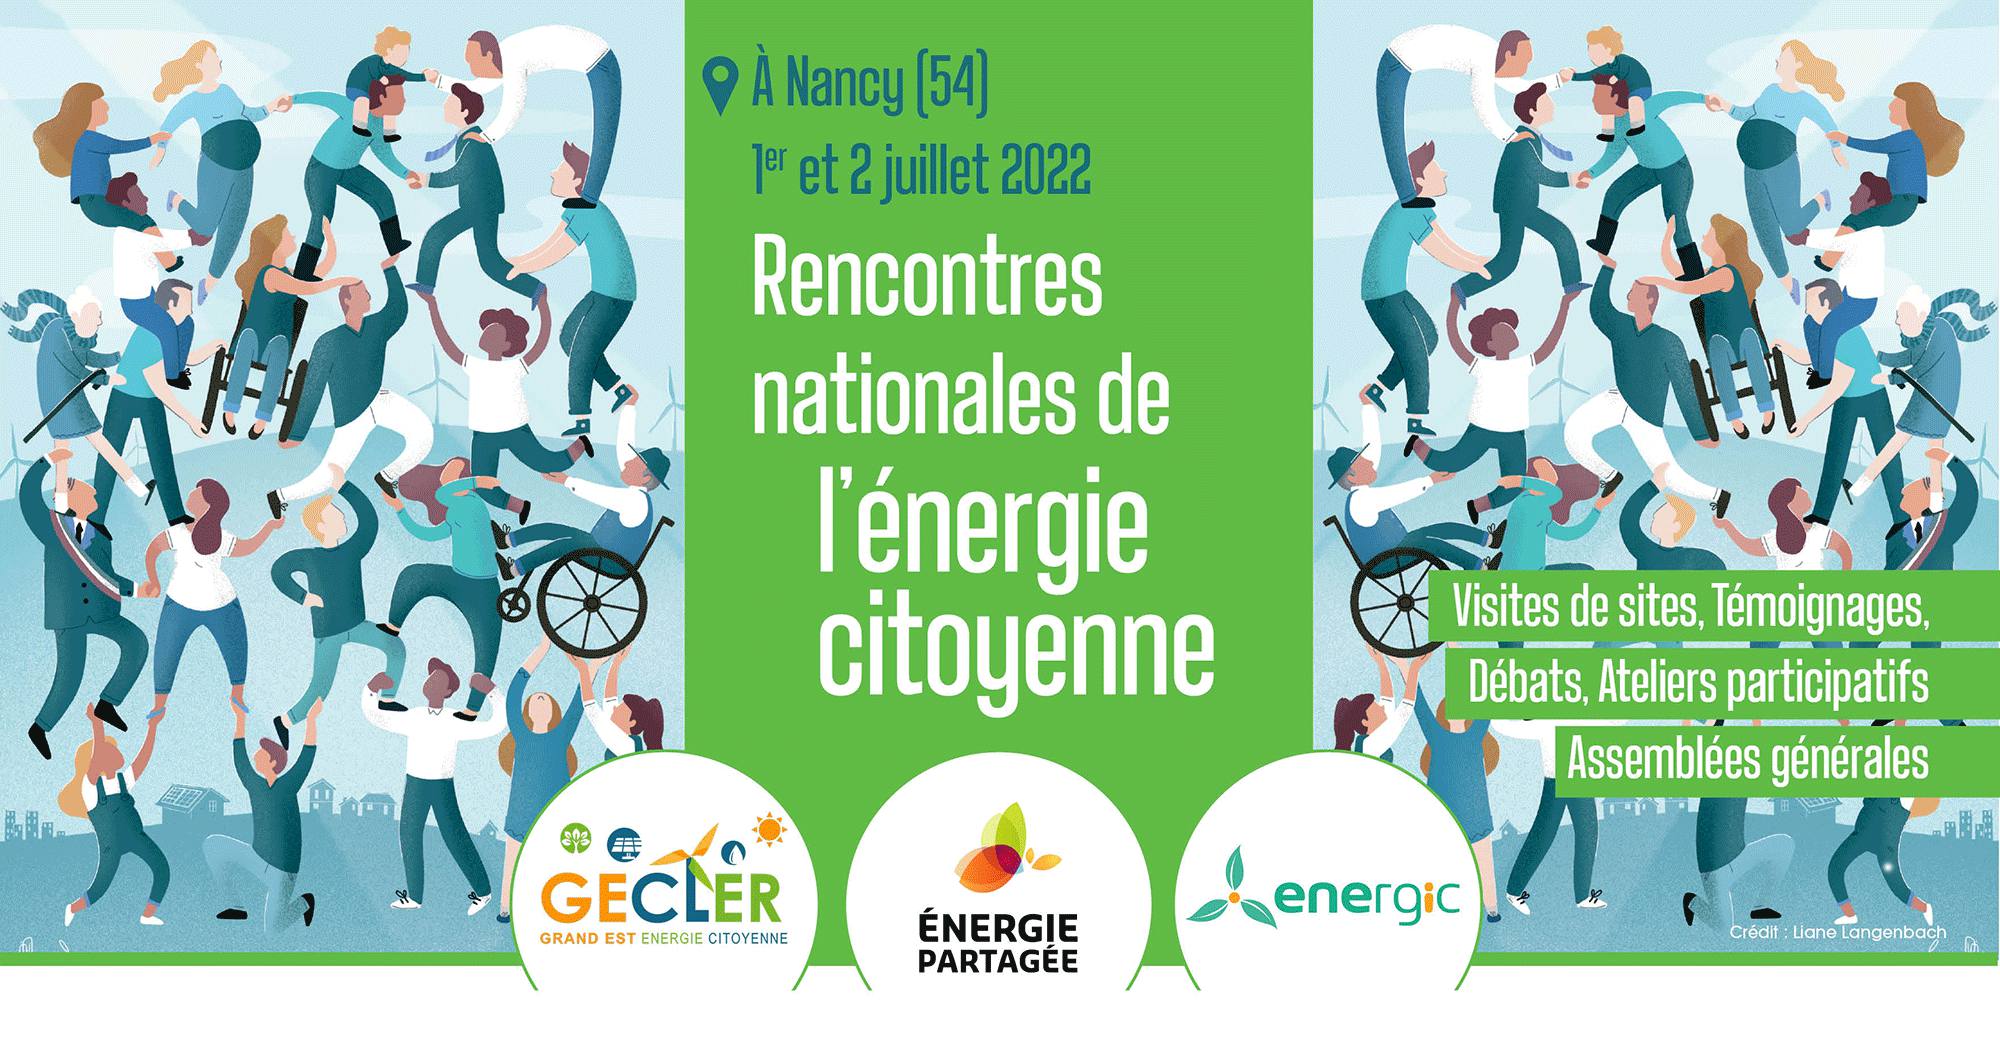 Rencontres nationales de l’énergie citoyenne